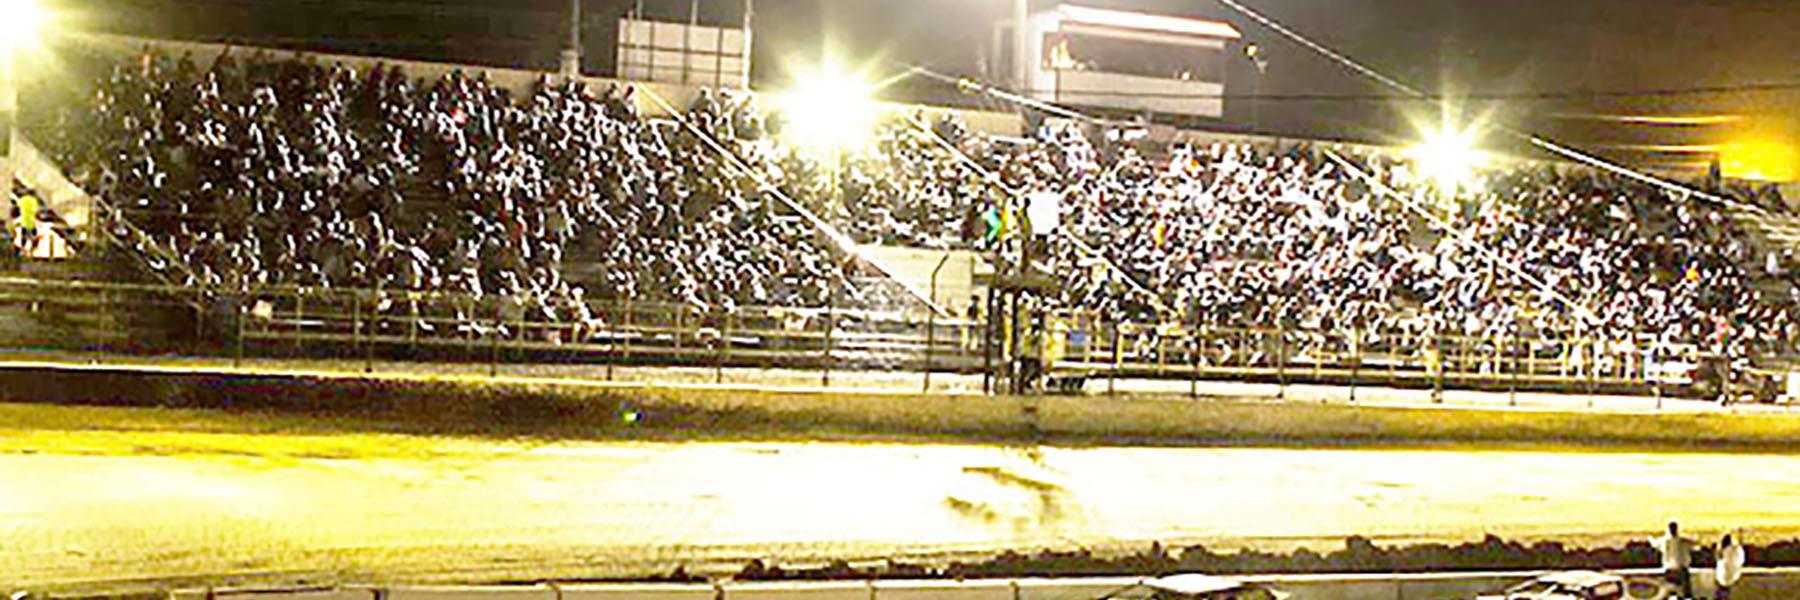 6/3/2022 - Tri-State Speedway